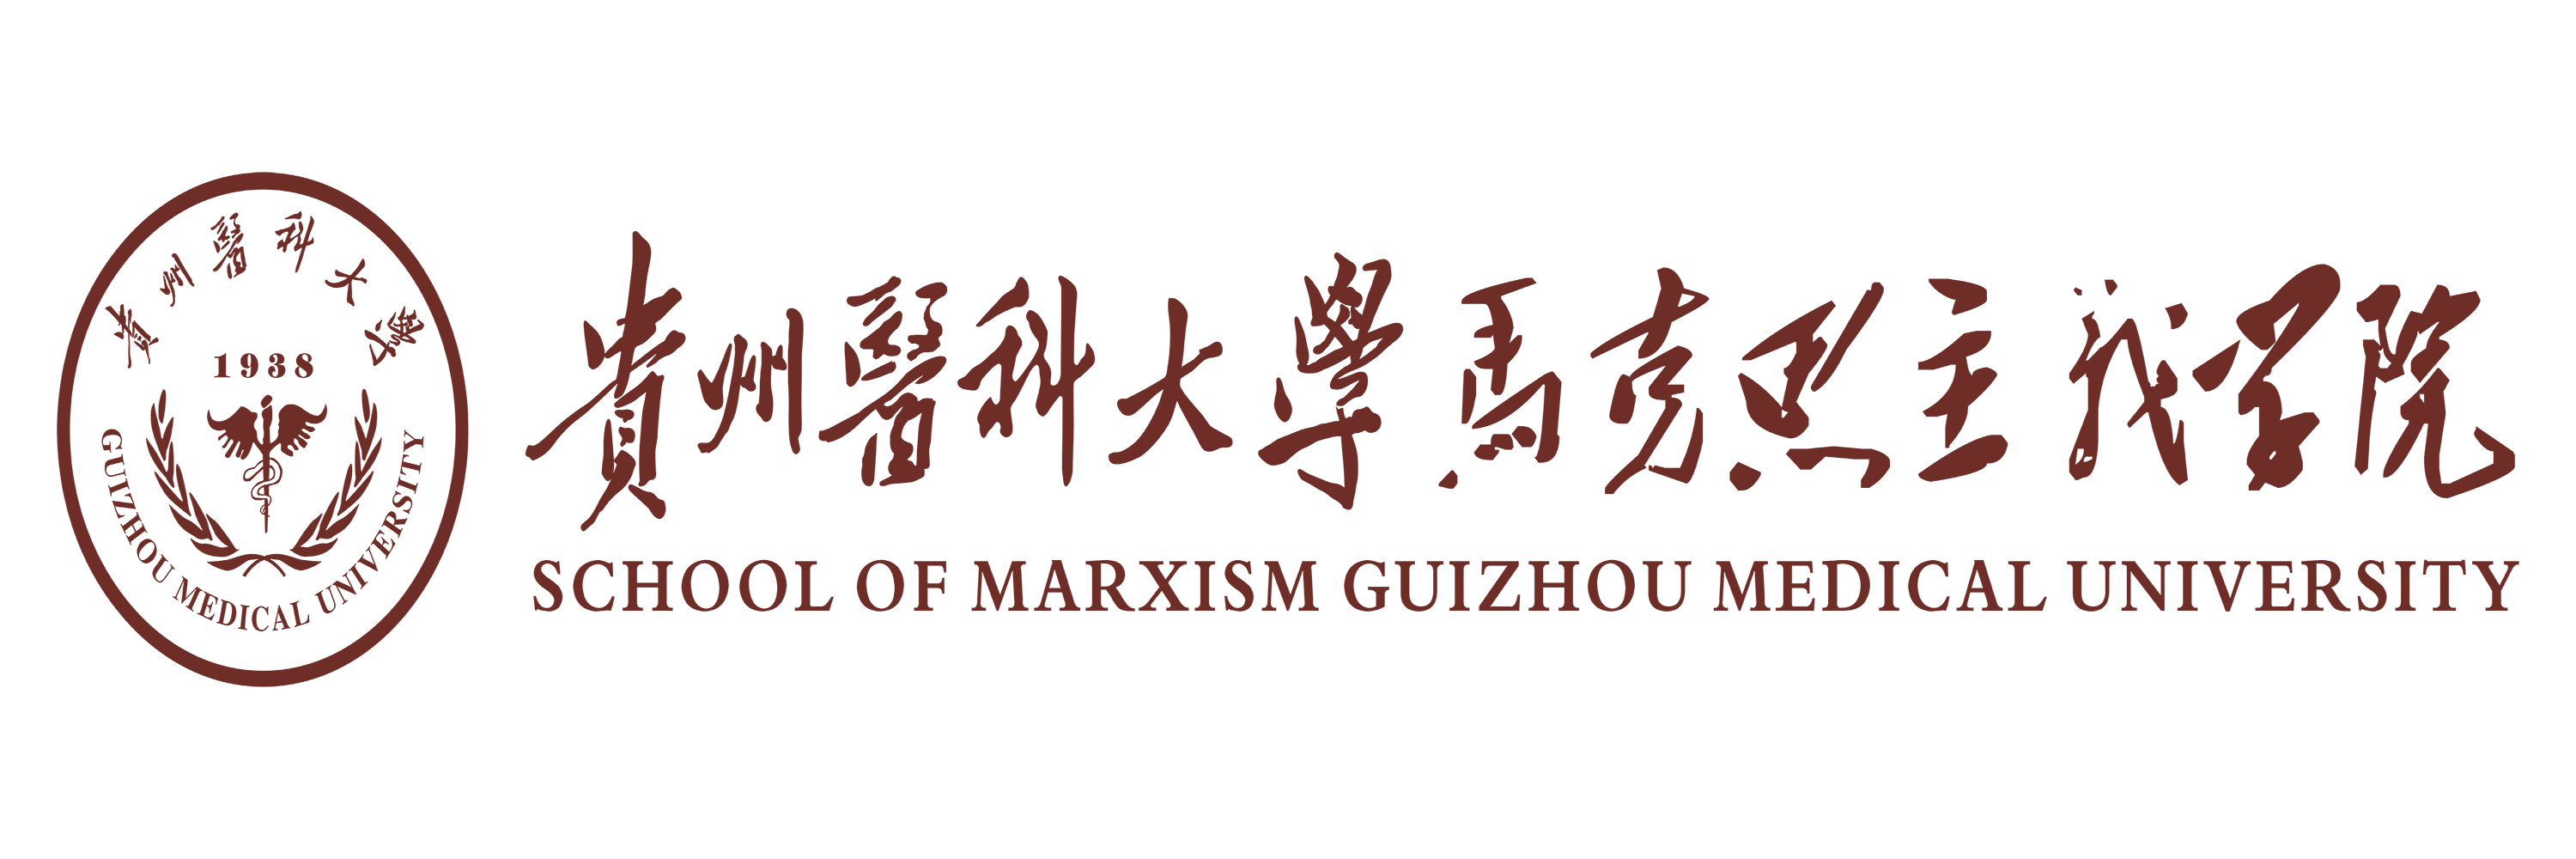 马克思主义学院